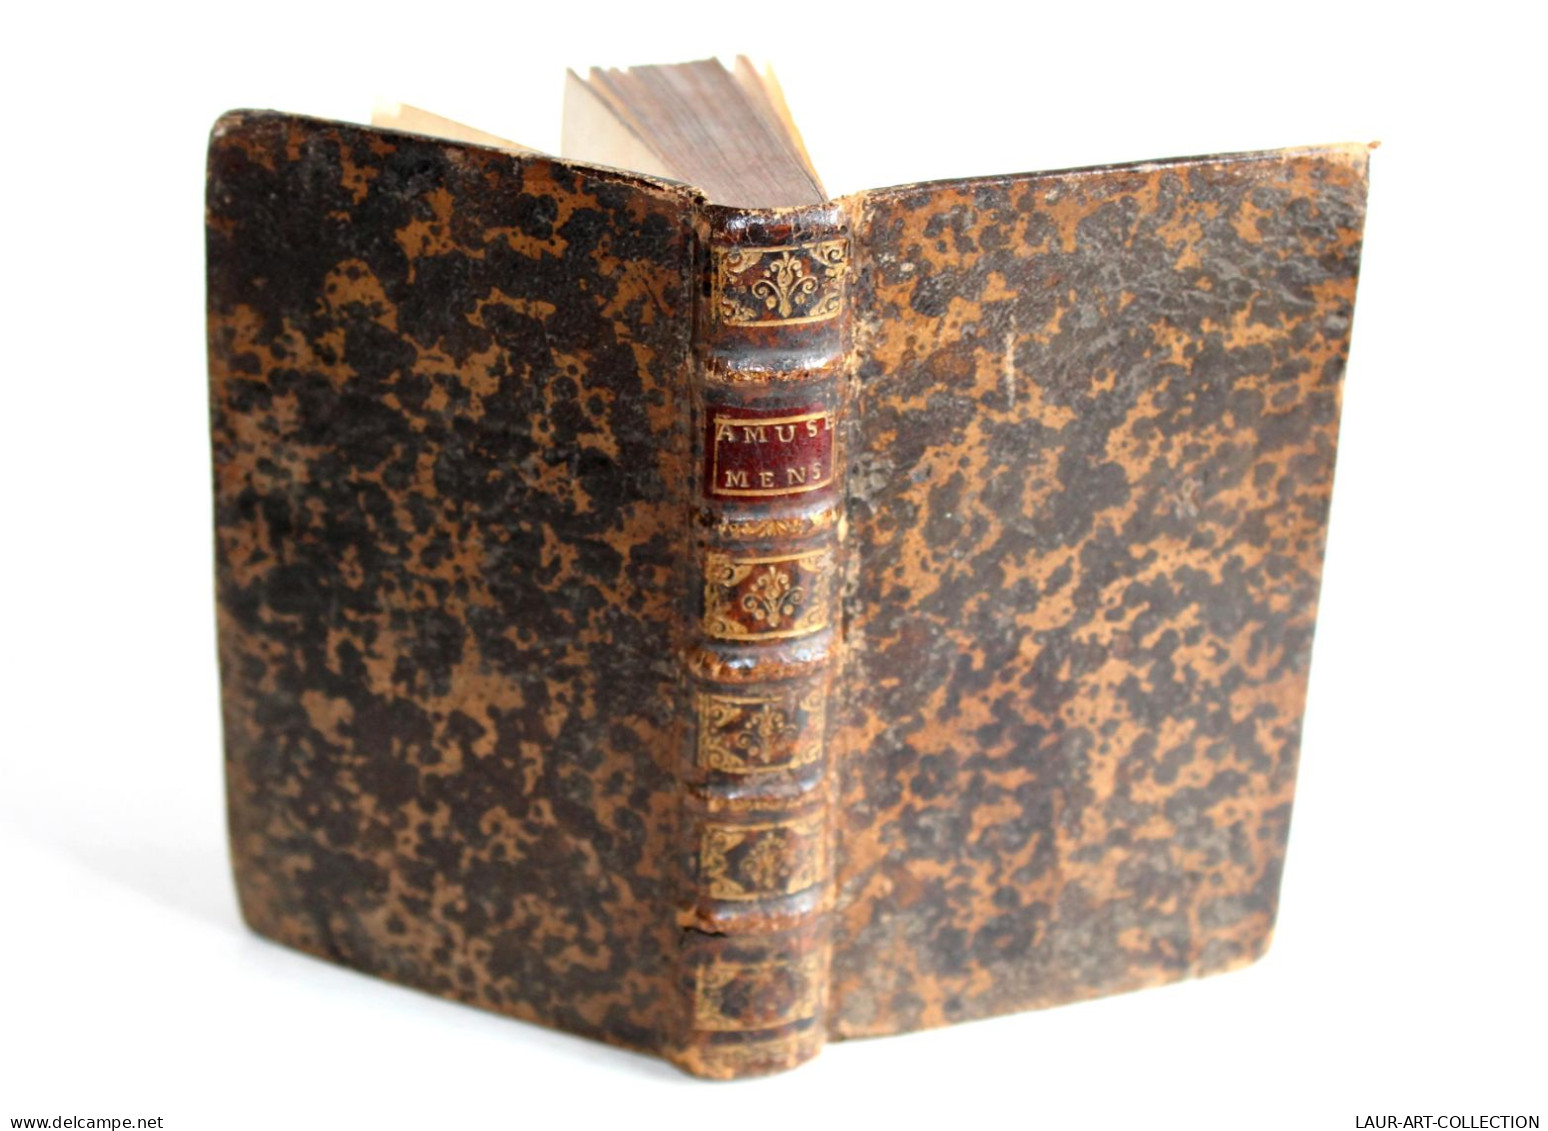 AMUSEMENS SERIEUX ET COMIQUES par CH. RIVIERE DUFRESNY 1723 JEAN JOMBERT EDITION ORIGINALE, LIVRE XVIIIe SIECLE (2204.3)